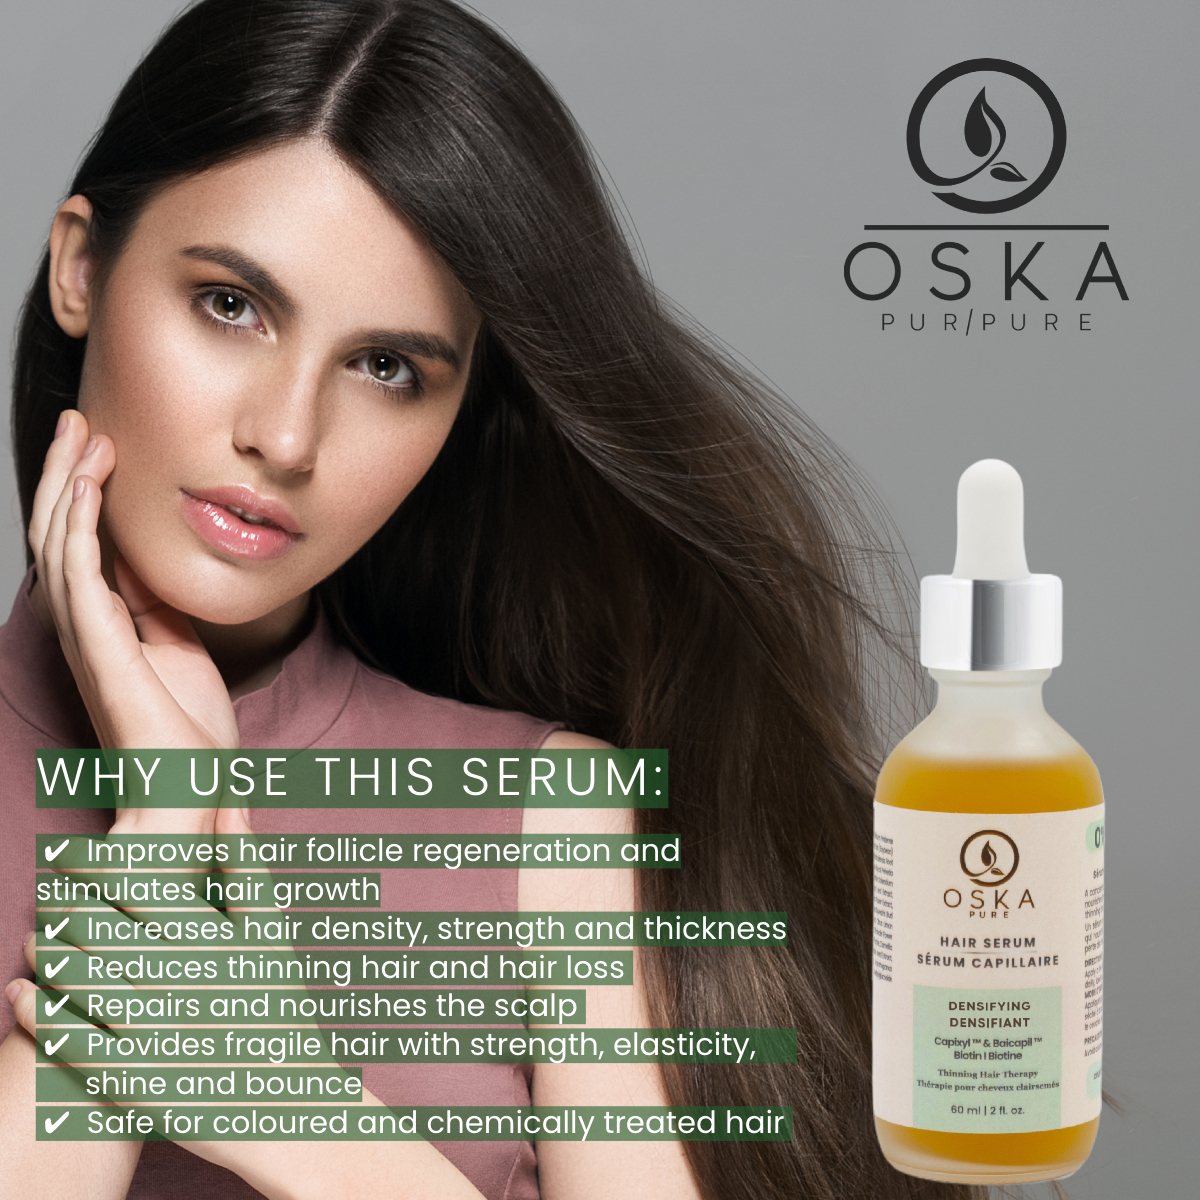 Hair Densifying Serum Anti-thinning effect • Hair densifier | OSKA Pure